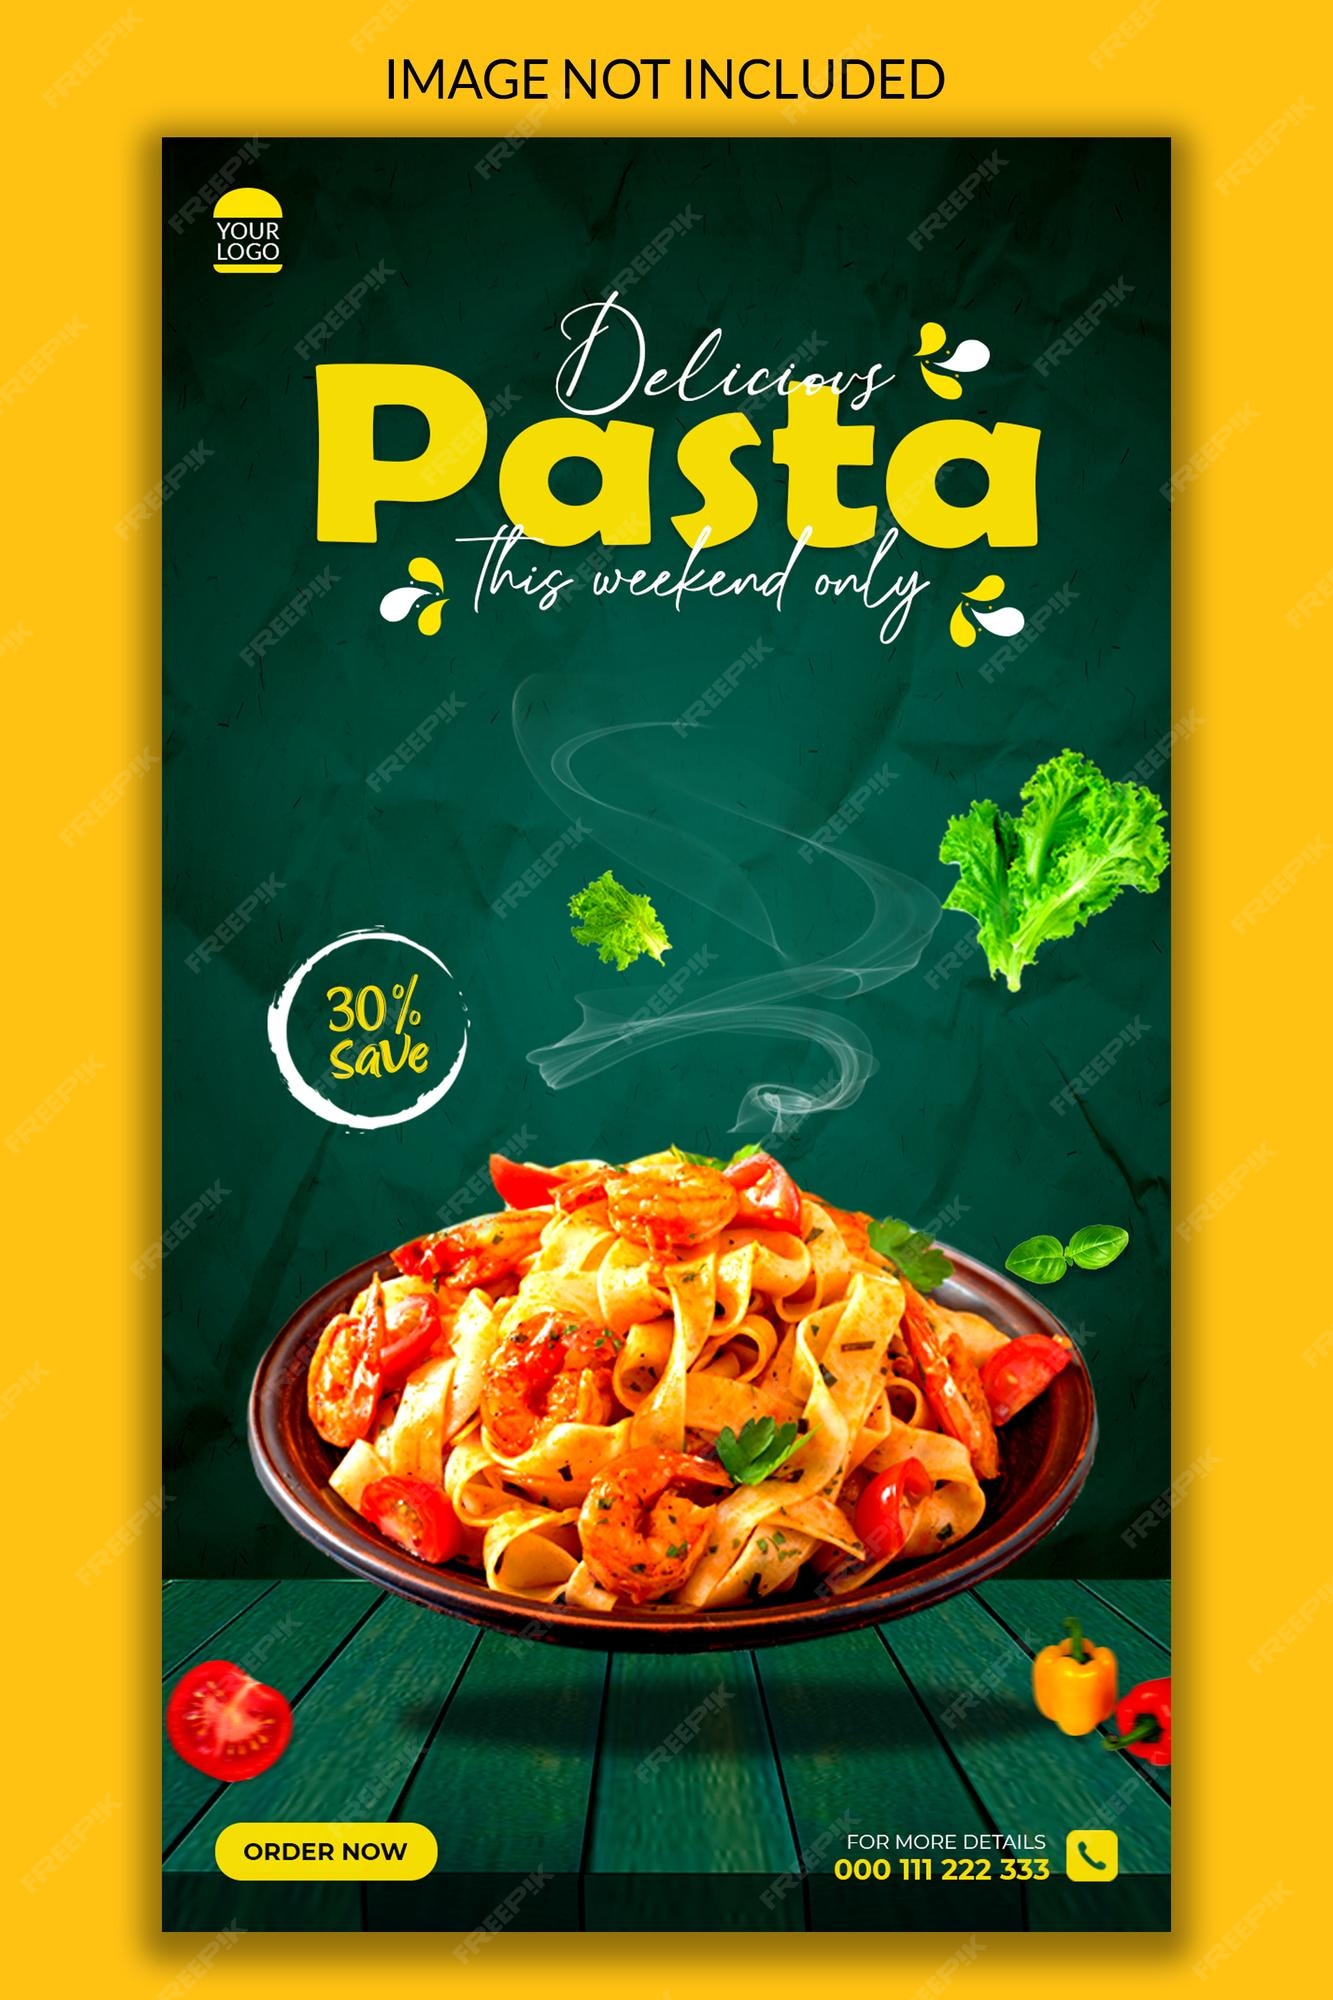 Premium PSD | Delicious pasta instagram story post design